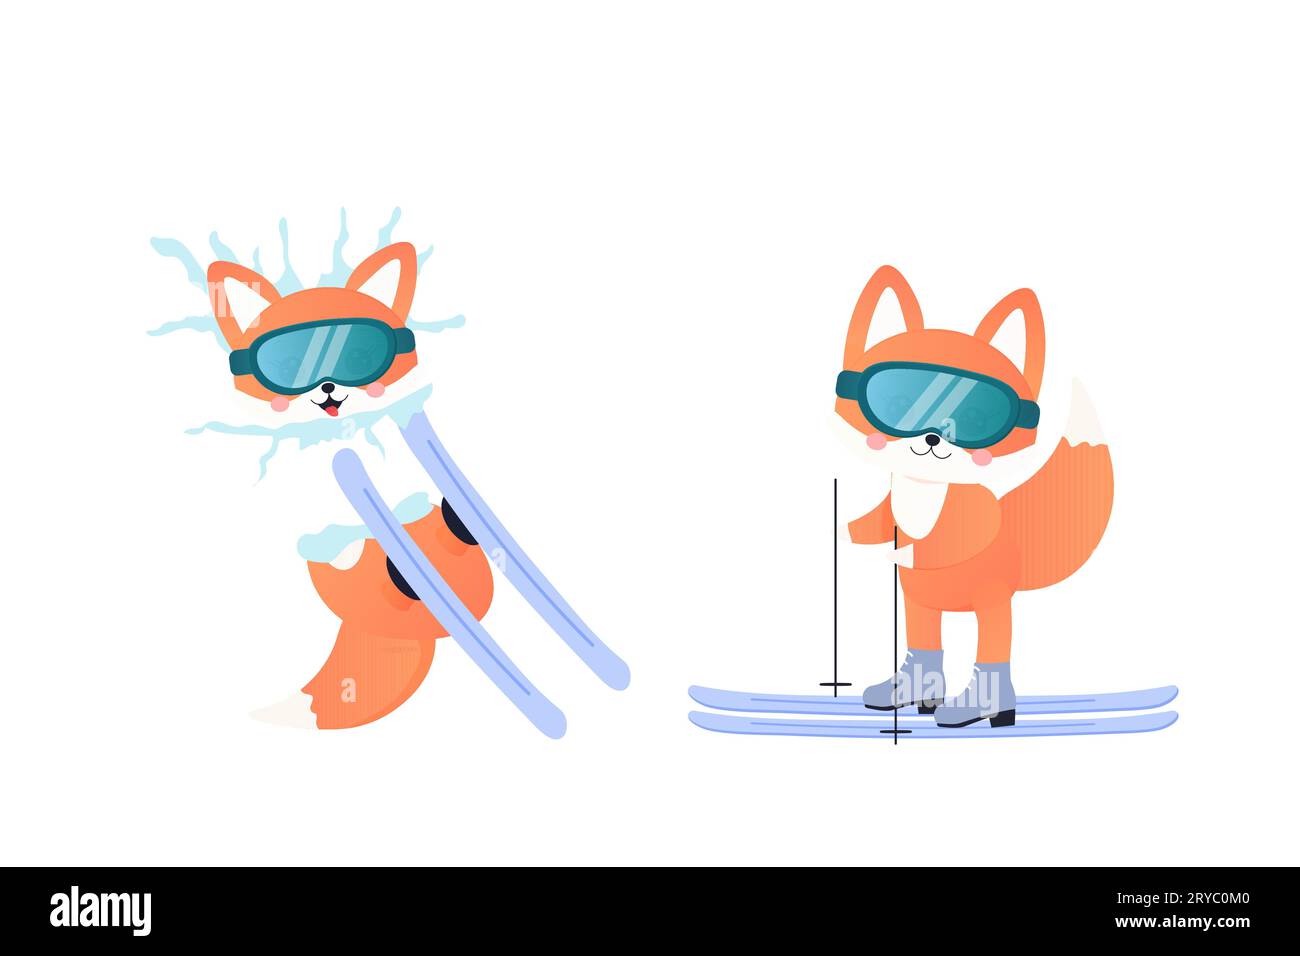 Fox auf Skiern, Snowboarden, im Schnee gefallen, Wintersport. Illustration isolierter Vektorkinder Stock Vektor